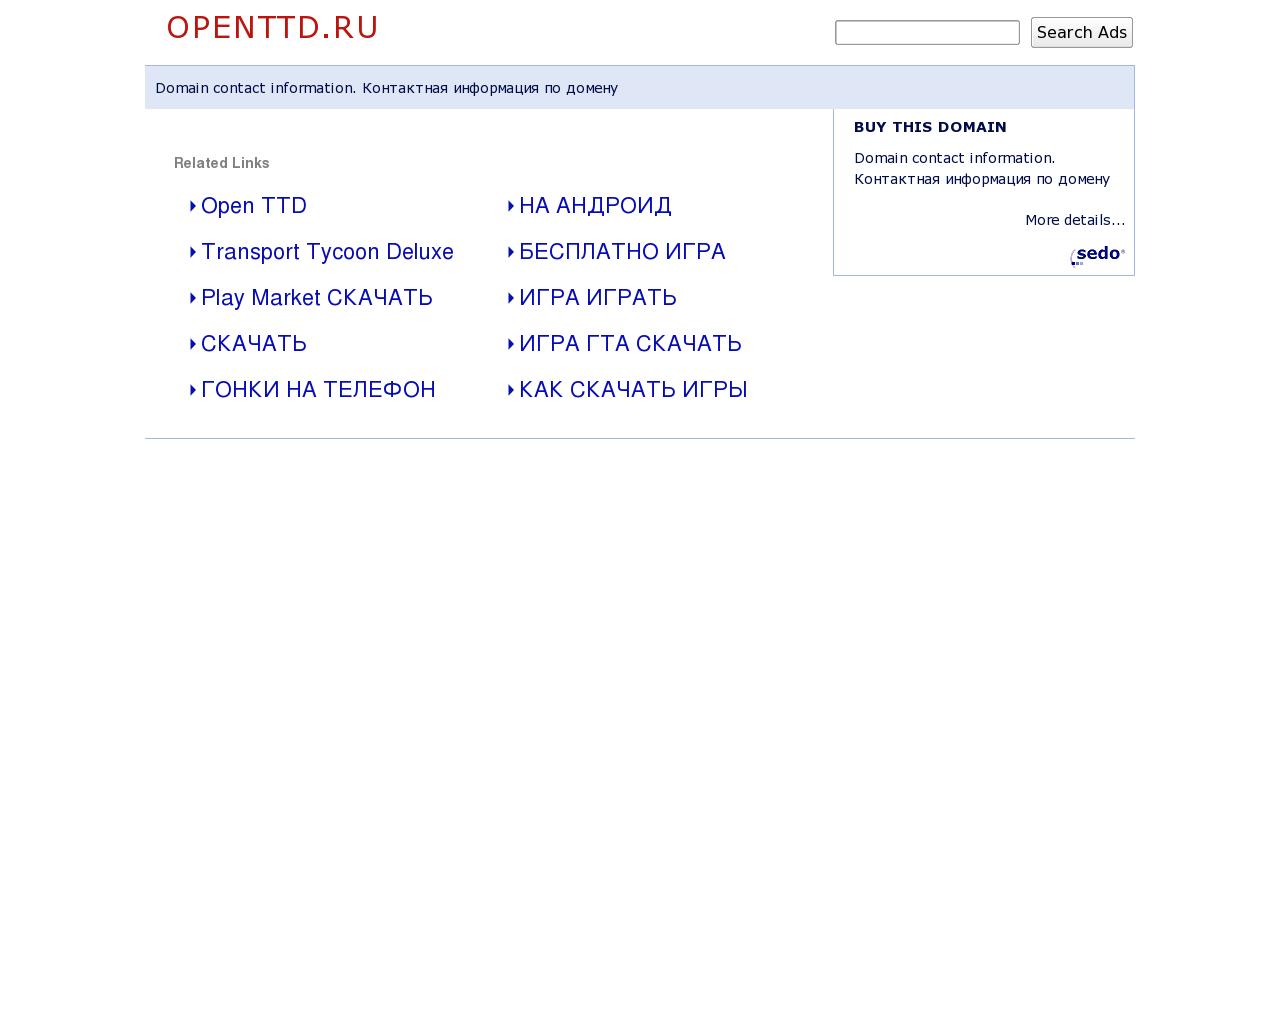 Изображение сайта openttd.ru в разрешении 1280x1024